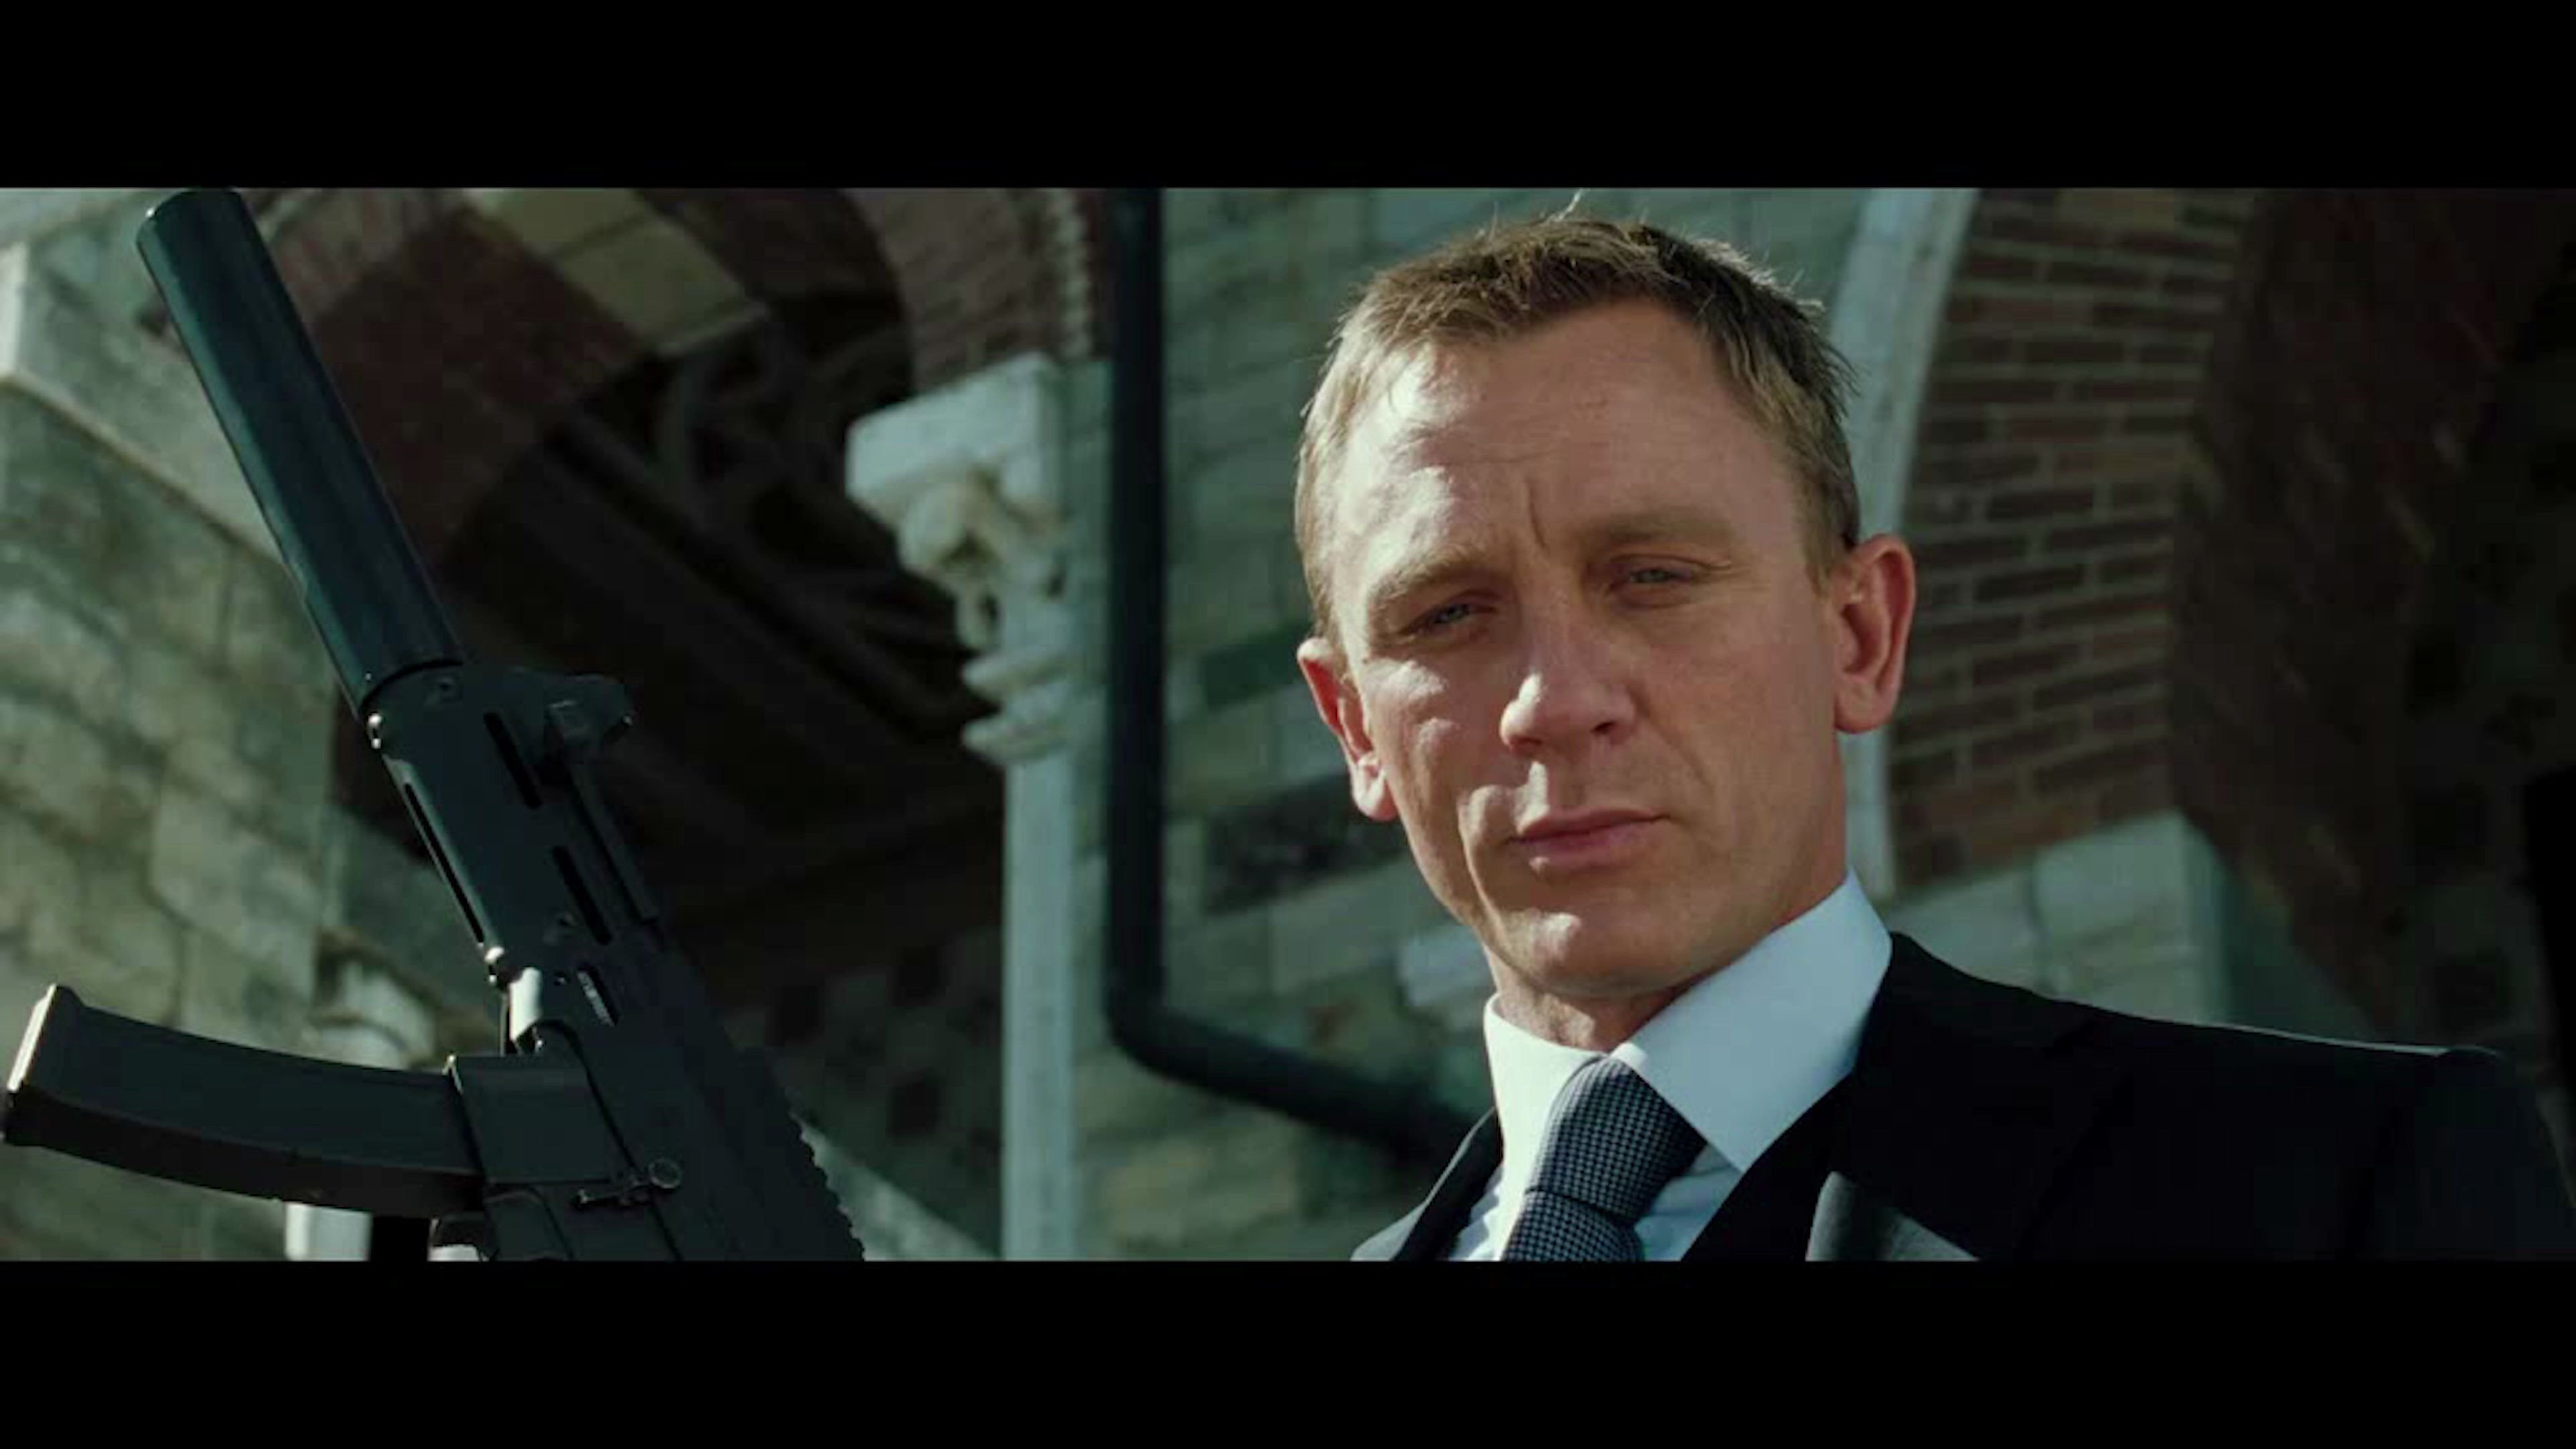 詹姆士∙邦德在新007电影中将开什么车 - 2019年3月14日, 俄罗斯卫星通讯社